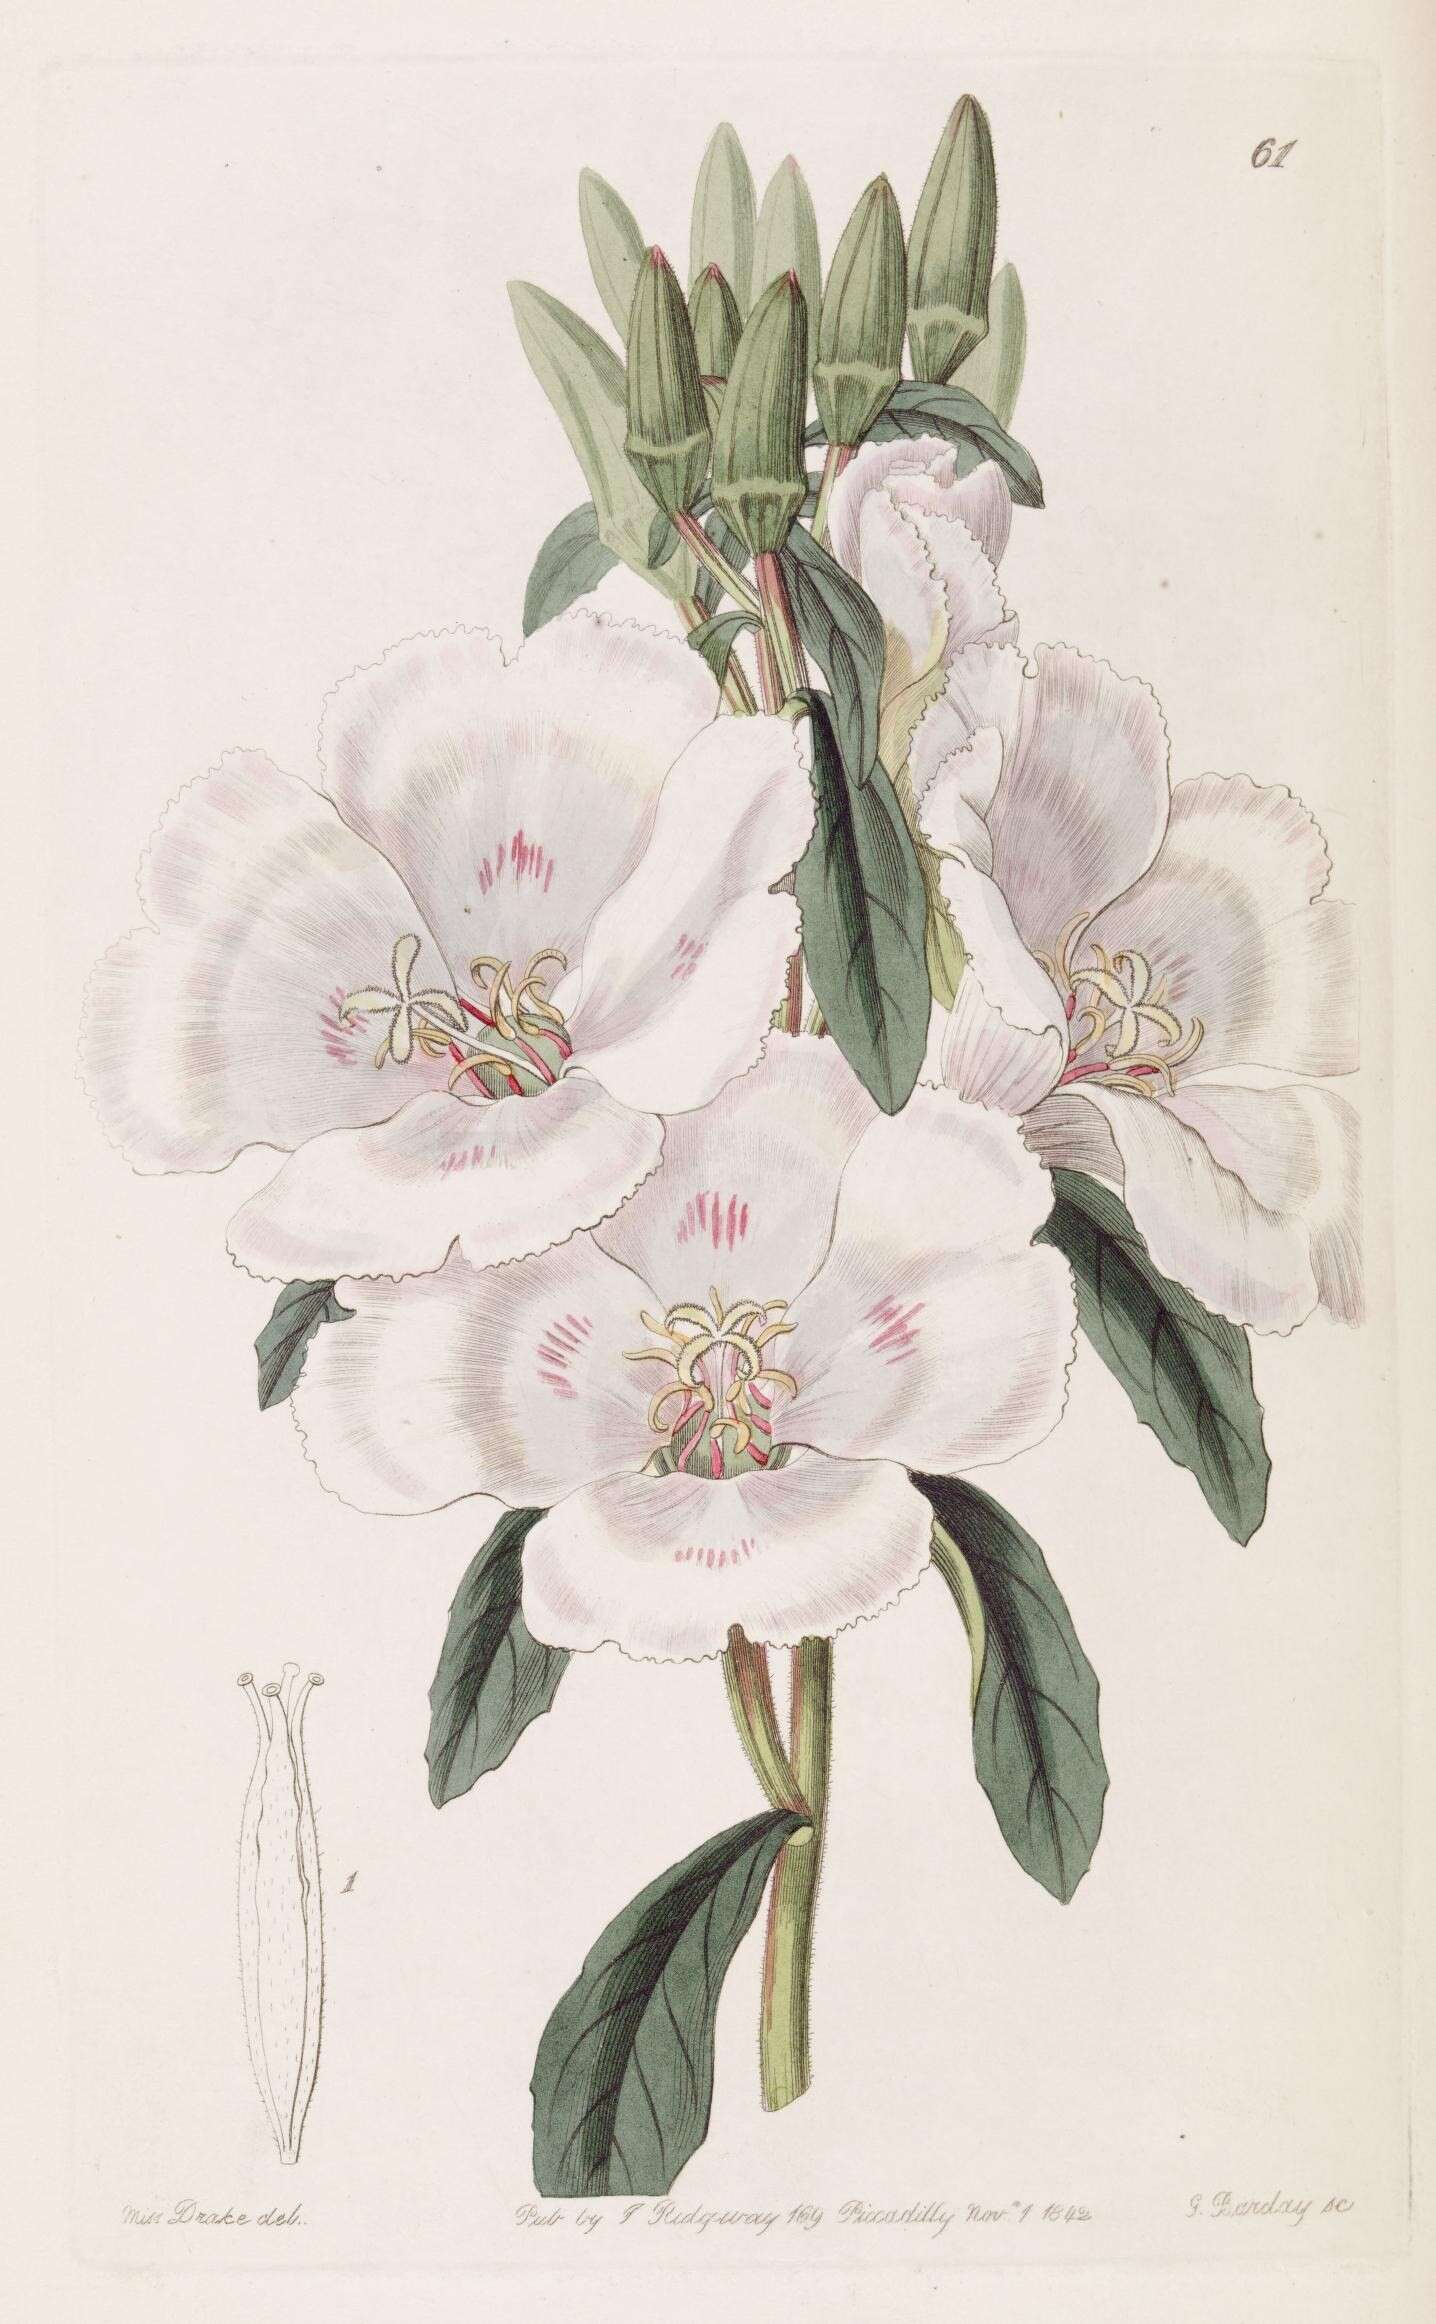 Image de Clarkia amoena subsp. whitneyi (Gray) F. H. Lewis & M. E. Lewis